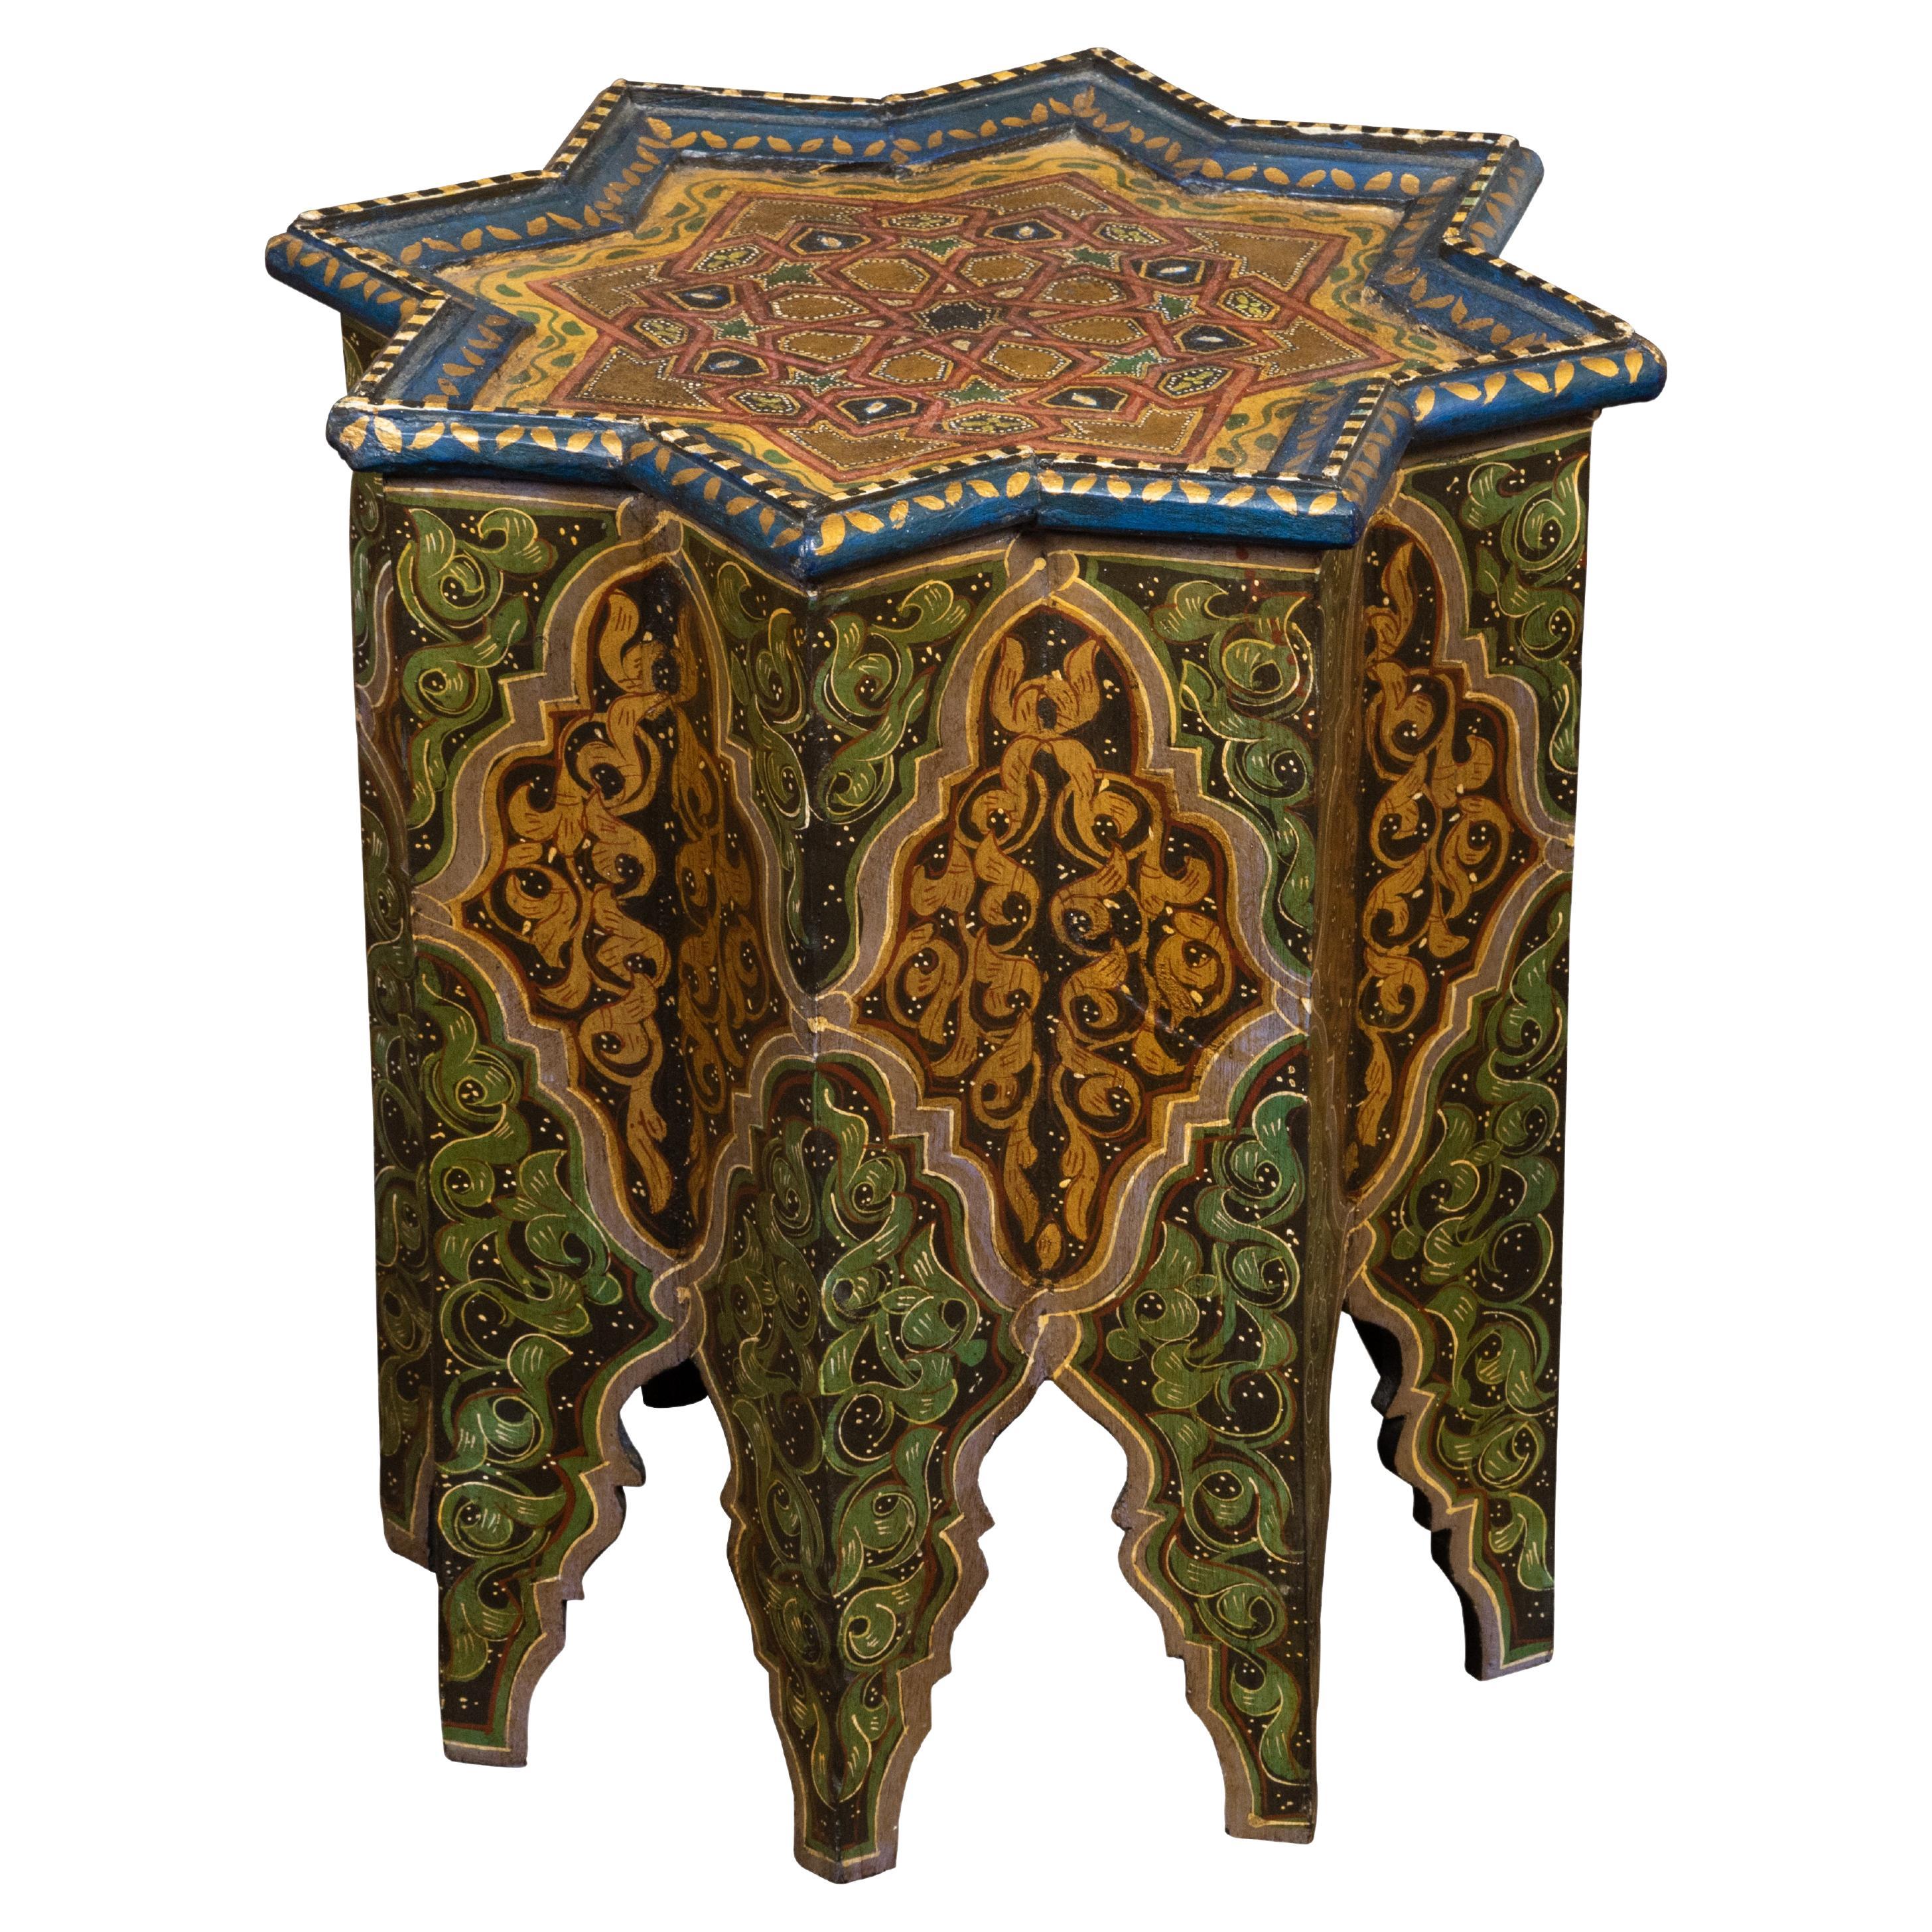 Marokkanischer Tisch im maurischen Stil der 1920er Jahre mit sternförmiger Platte und polychromem Dekor